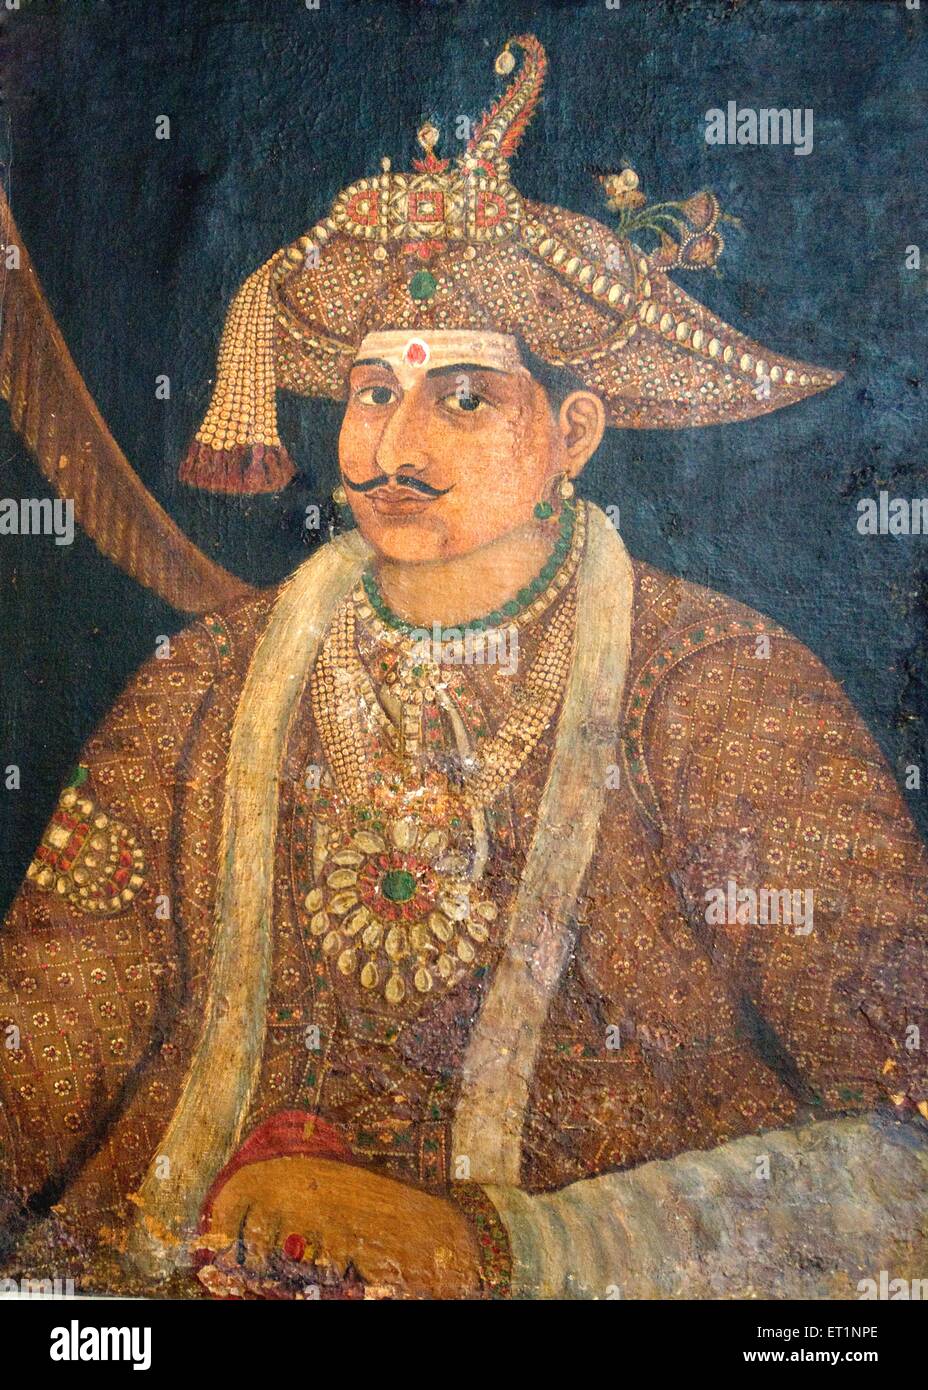 Pintura al óleo de h h sivaji raja de Thanjavur, Tamil Nadu, India Foto de stock